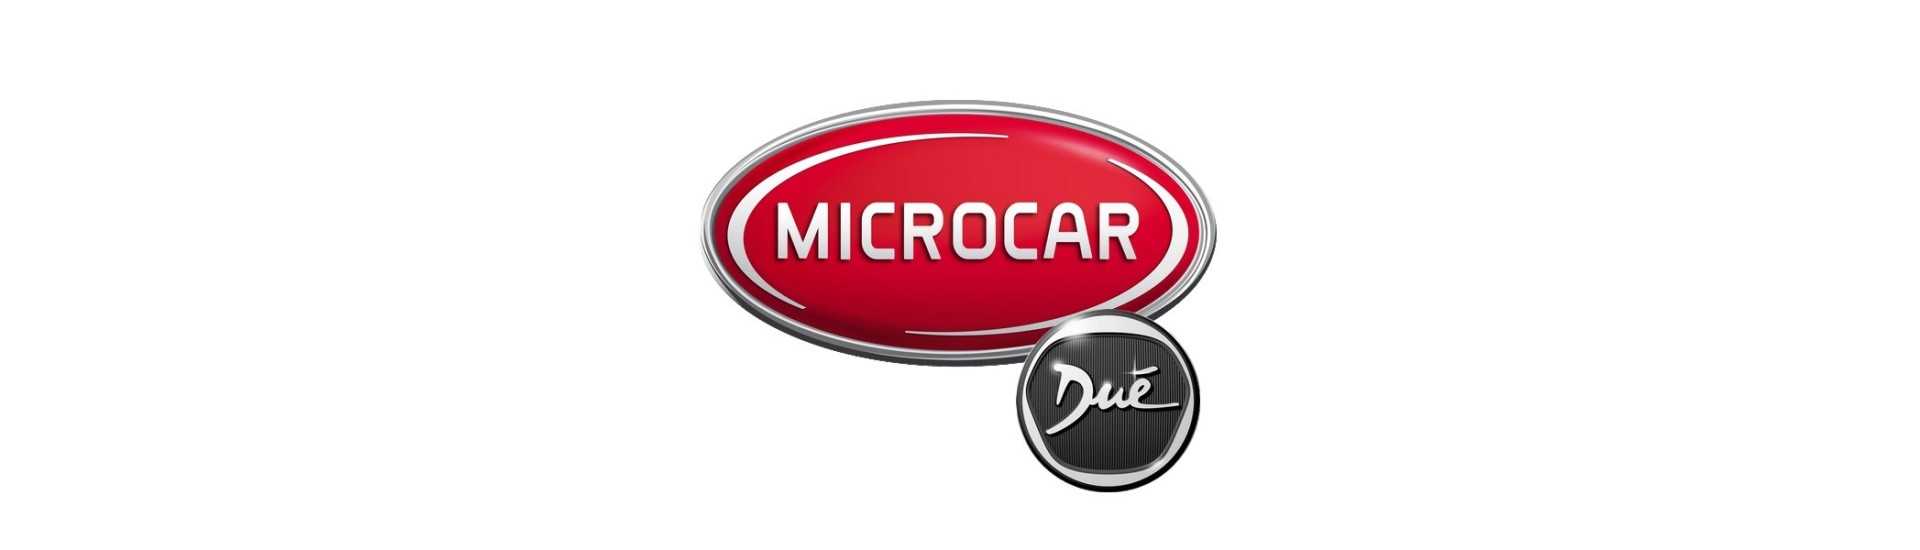 hinge dörr hood hayon bästa prisbil utan tillstånd Microcar